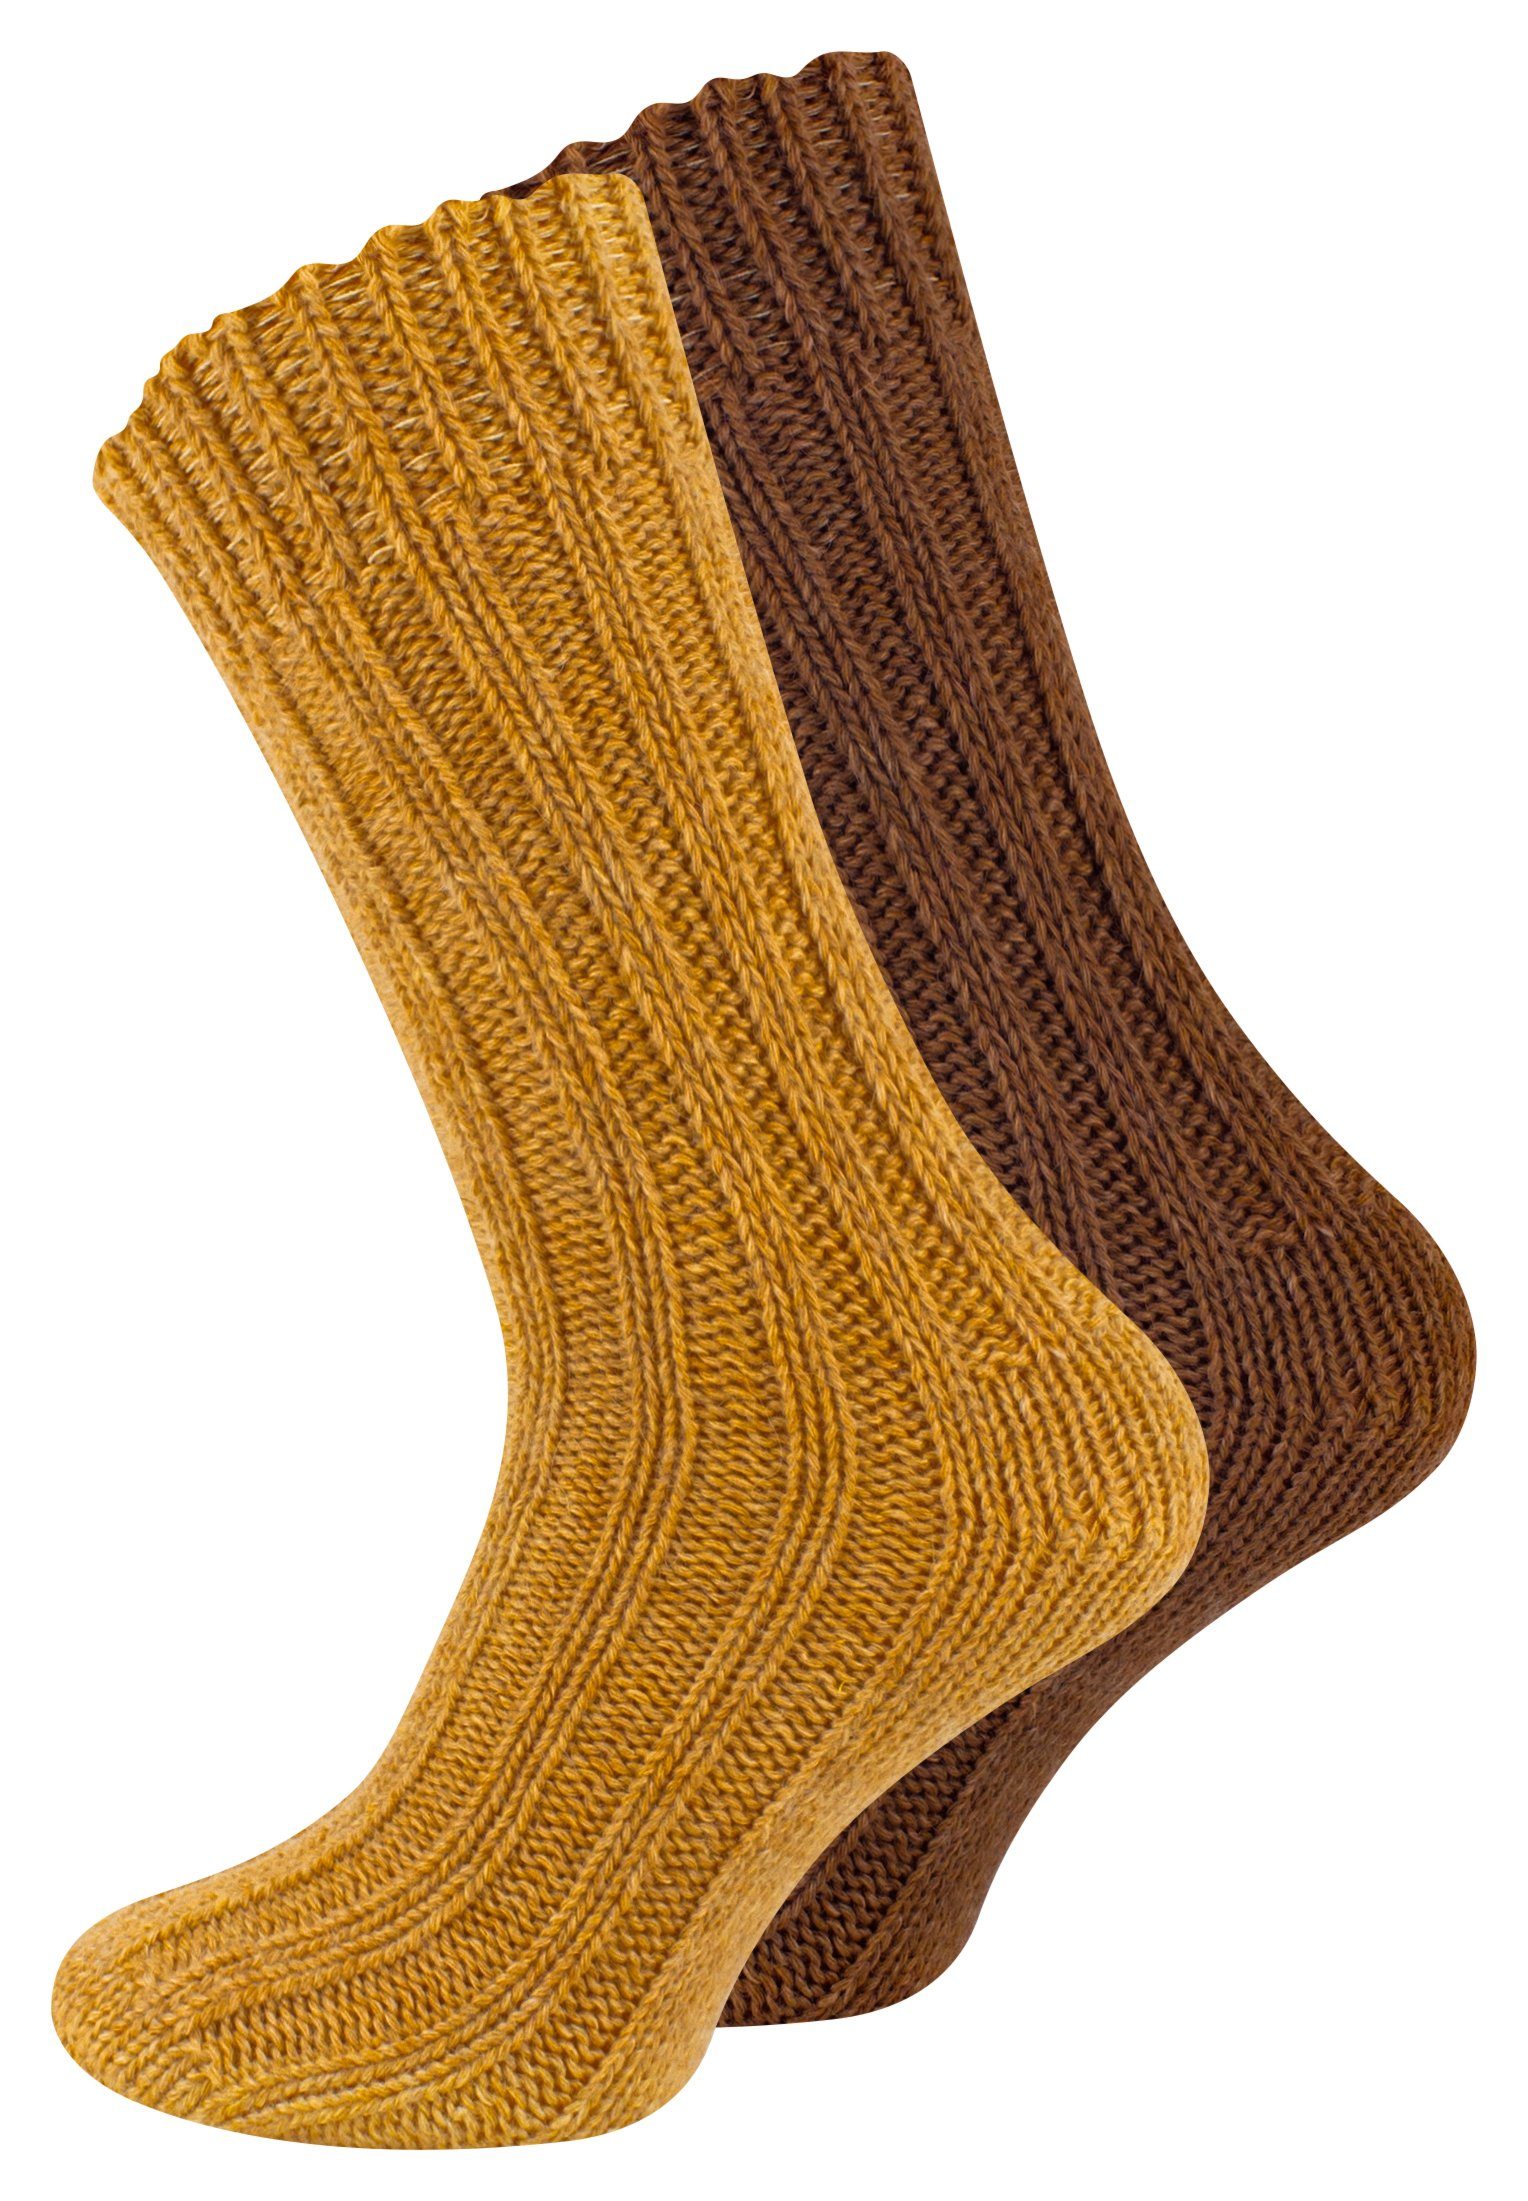 Cotton Prime® Socken Unisex Alpakasocken (4-Paar) ökologisch gefärbt und vorgewaschen goldgelb/braun